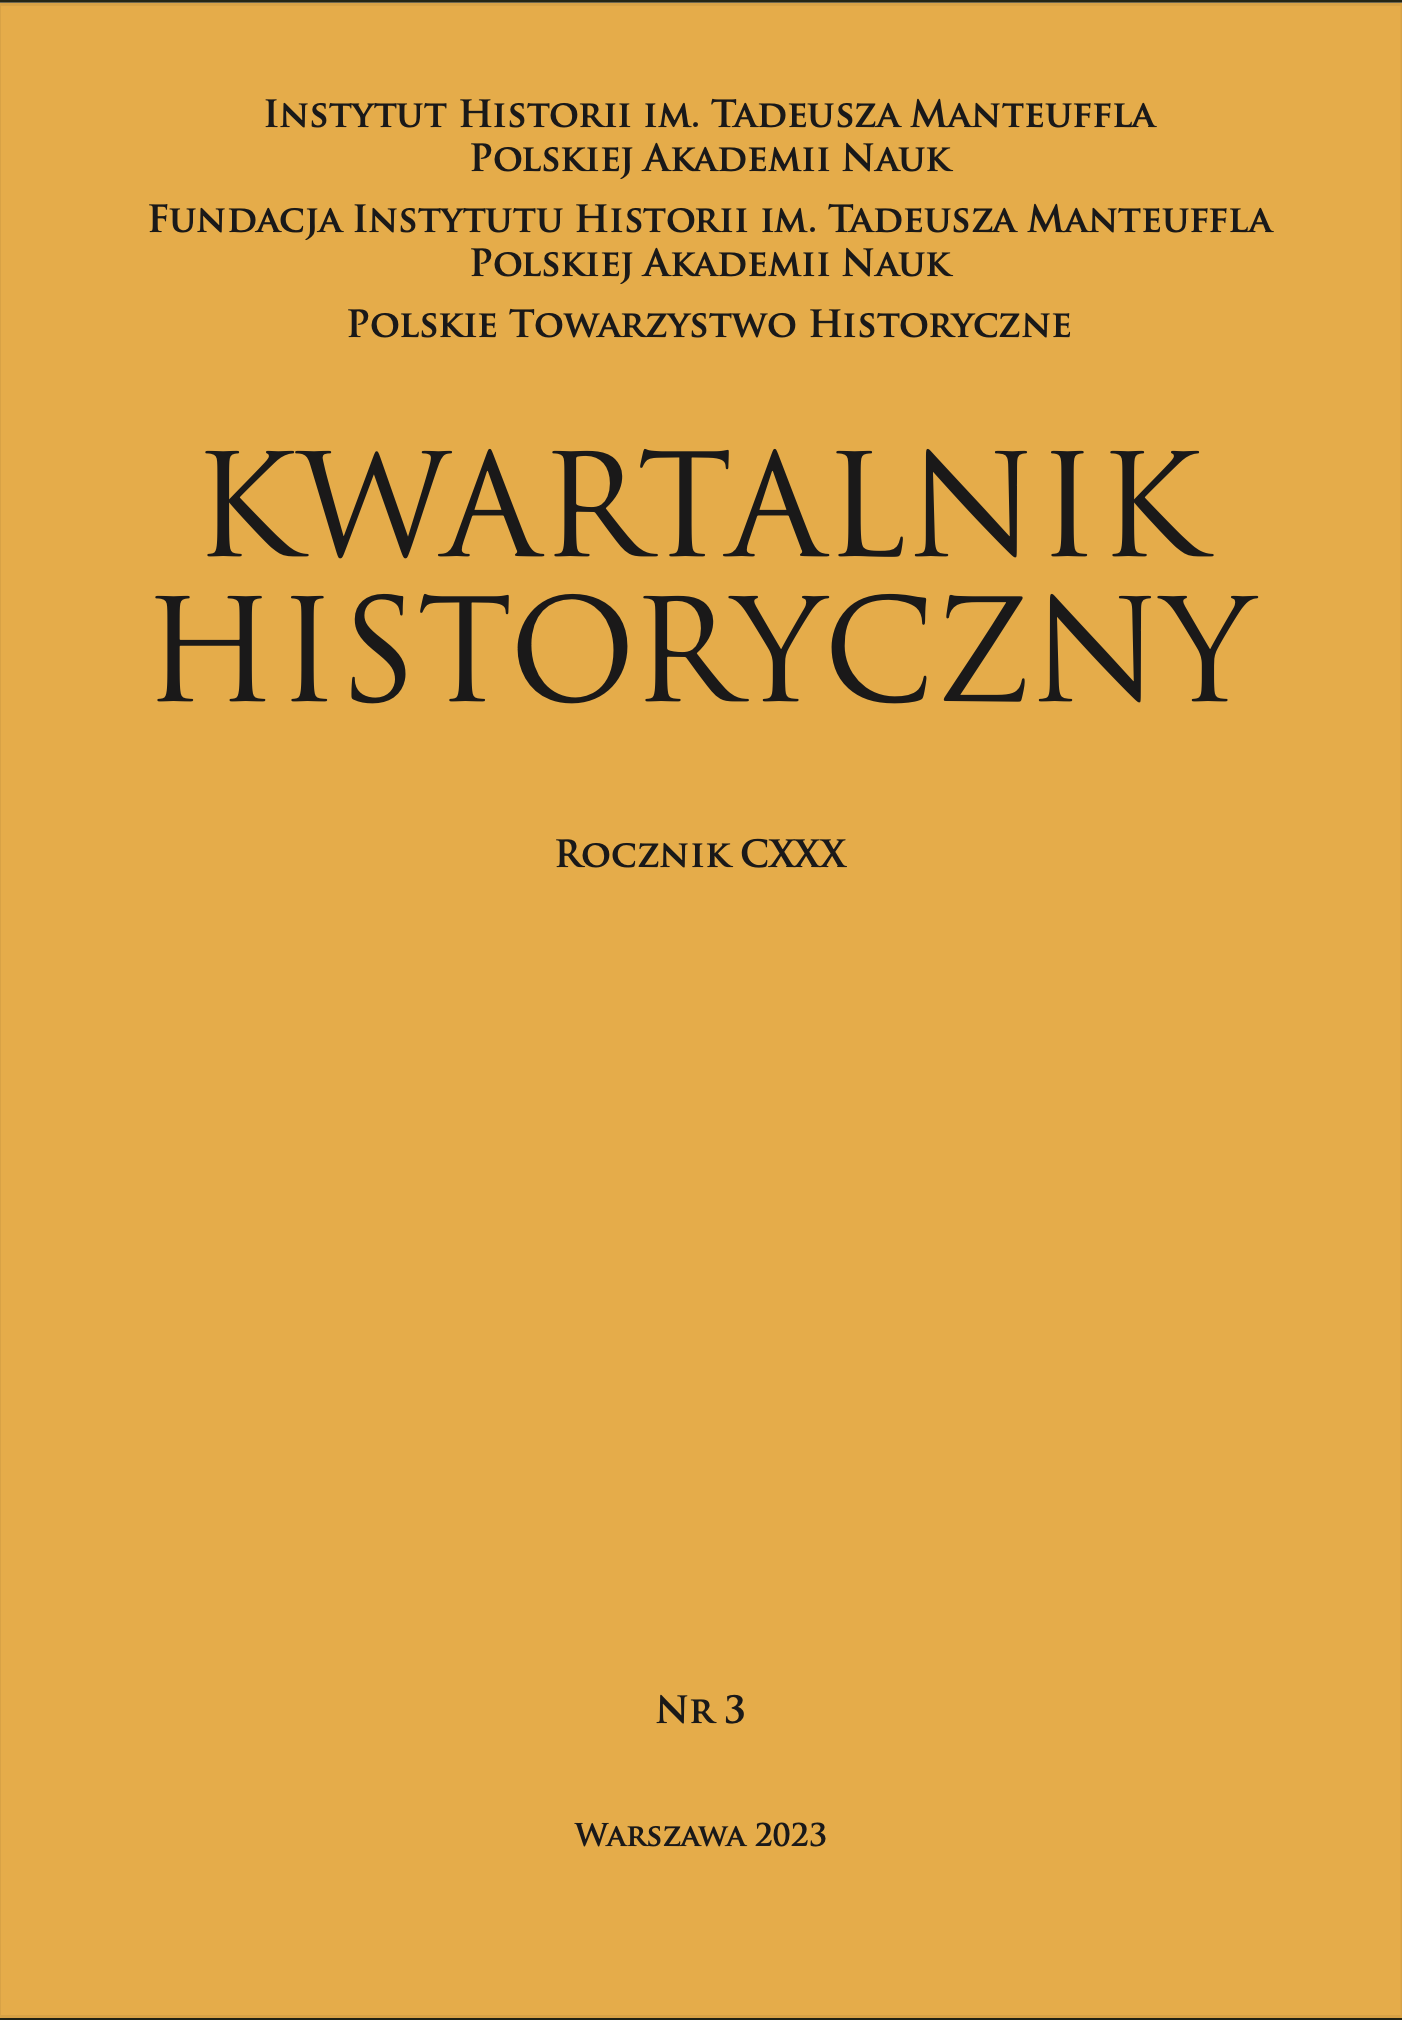 POLSCY ŻOŁNIERZE W PAWLISZCZEW BORZE (1939–1941) W ŚWIETLE RELACJI POWOJENNYCH